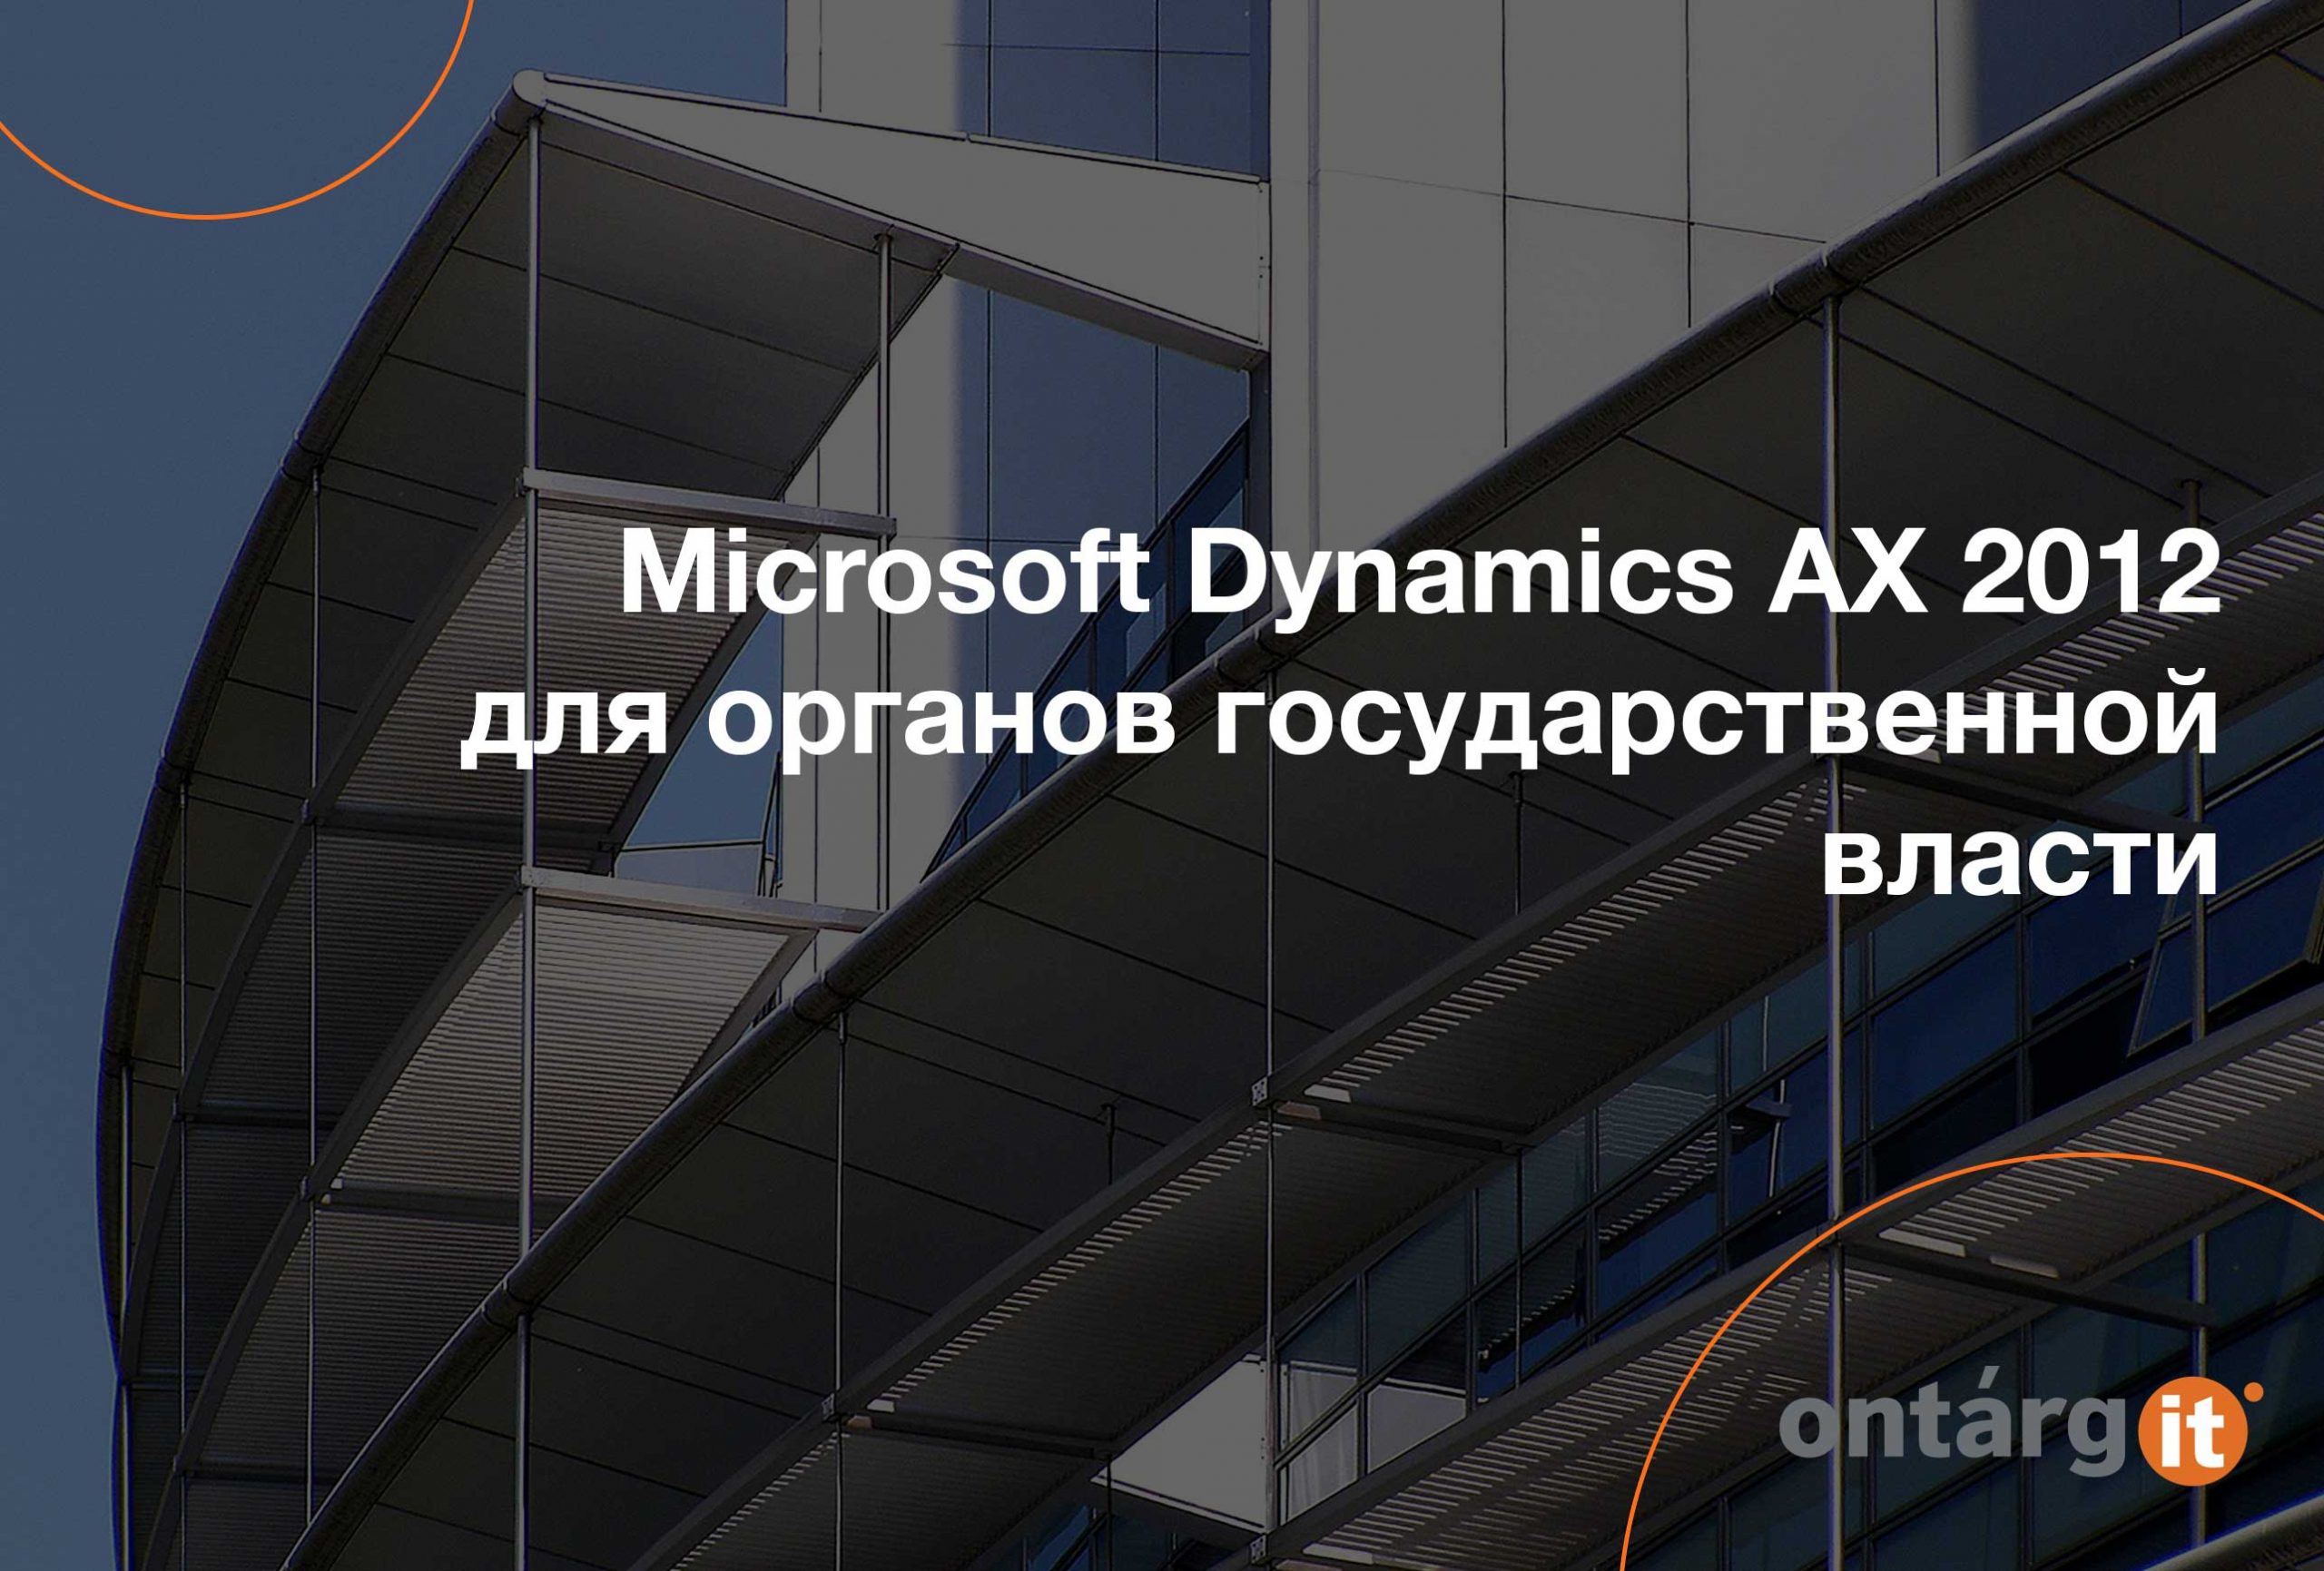 Microsoft Dynamics AX 2012 для органов государственной власти